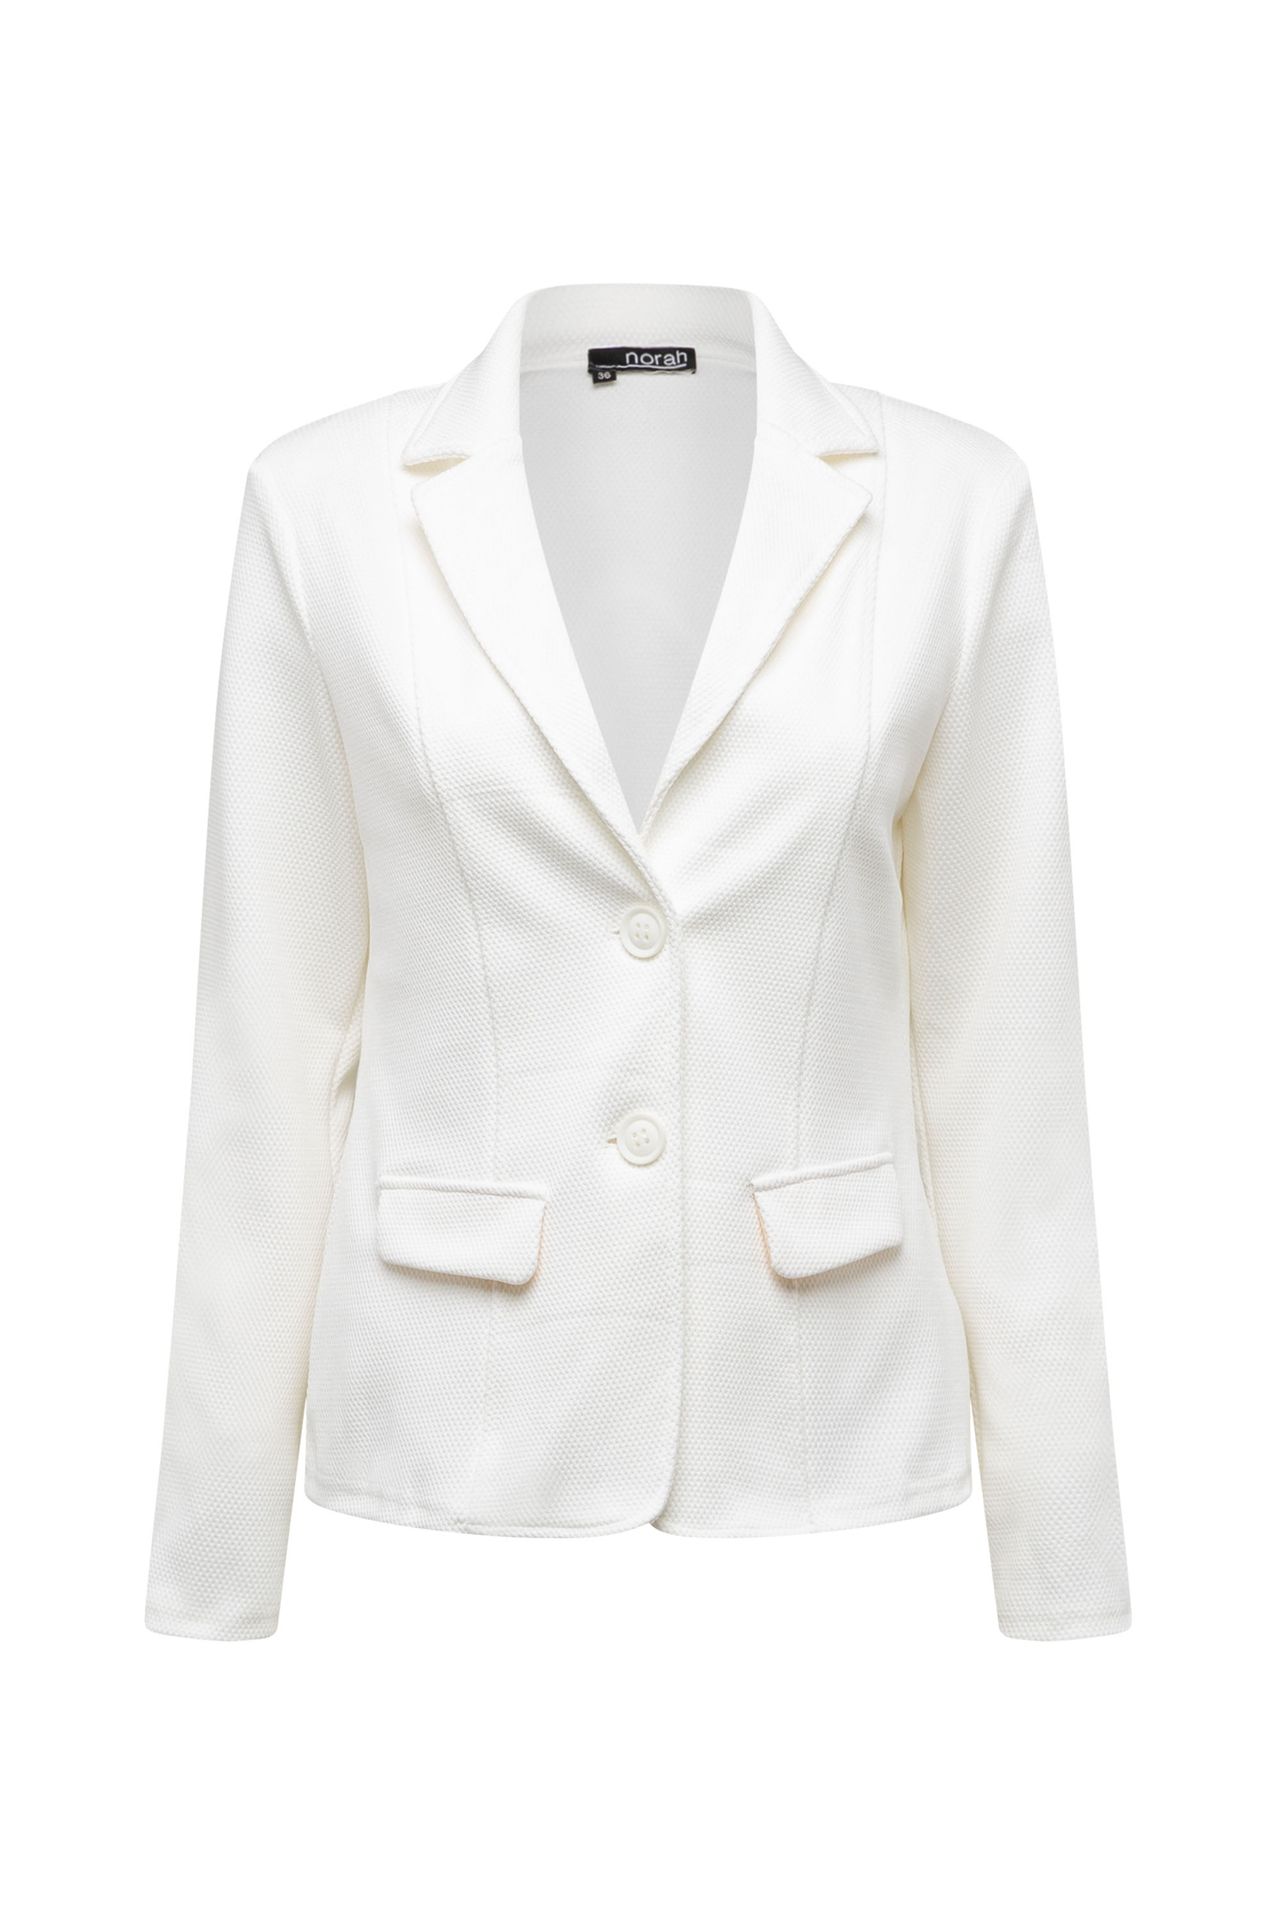  Witte blazer Wit P-213392-100